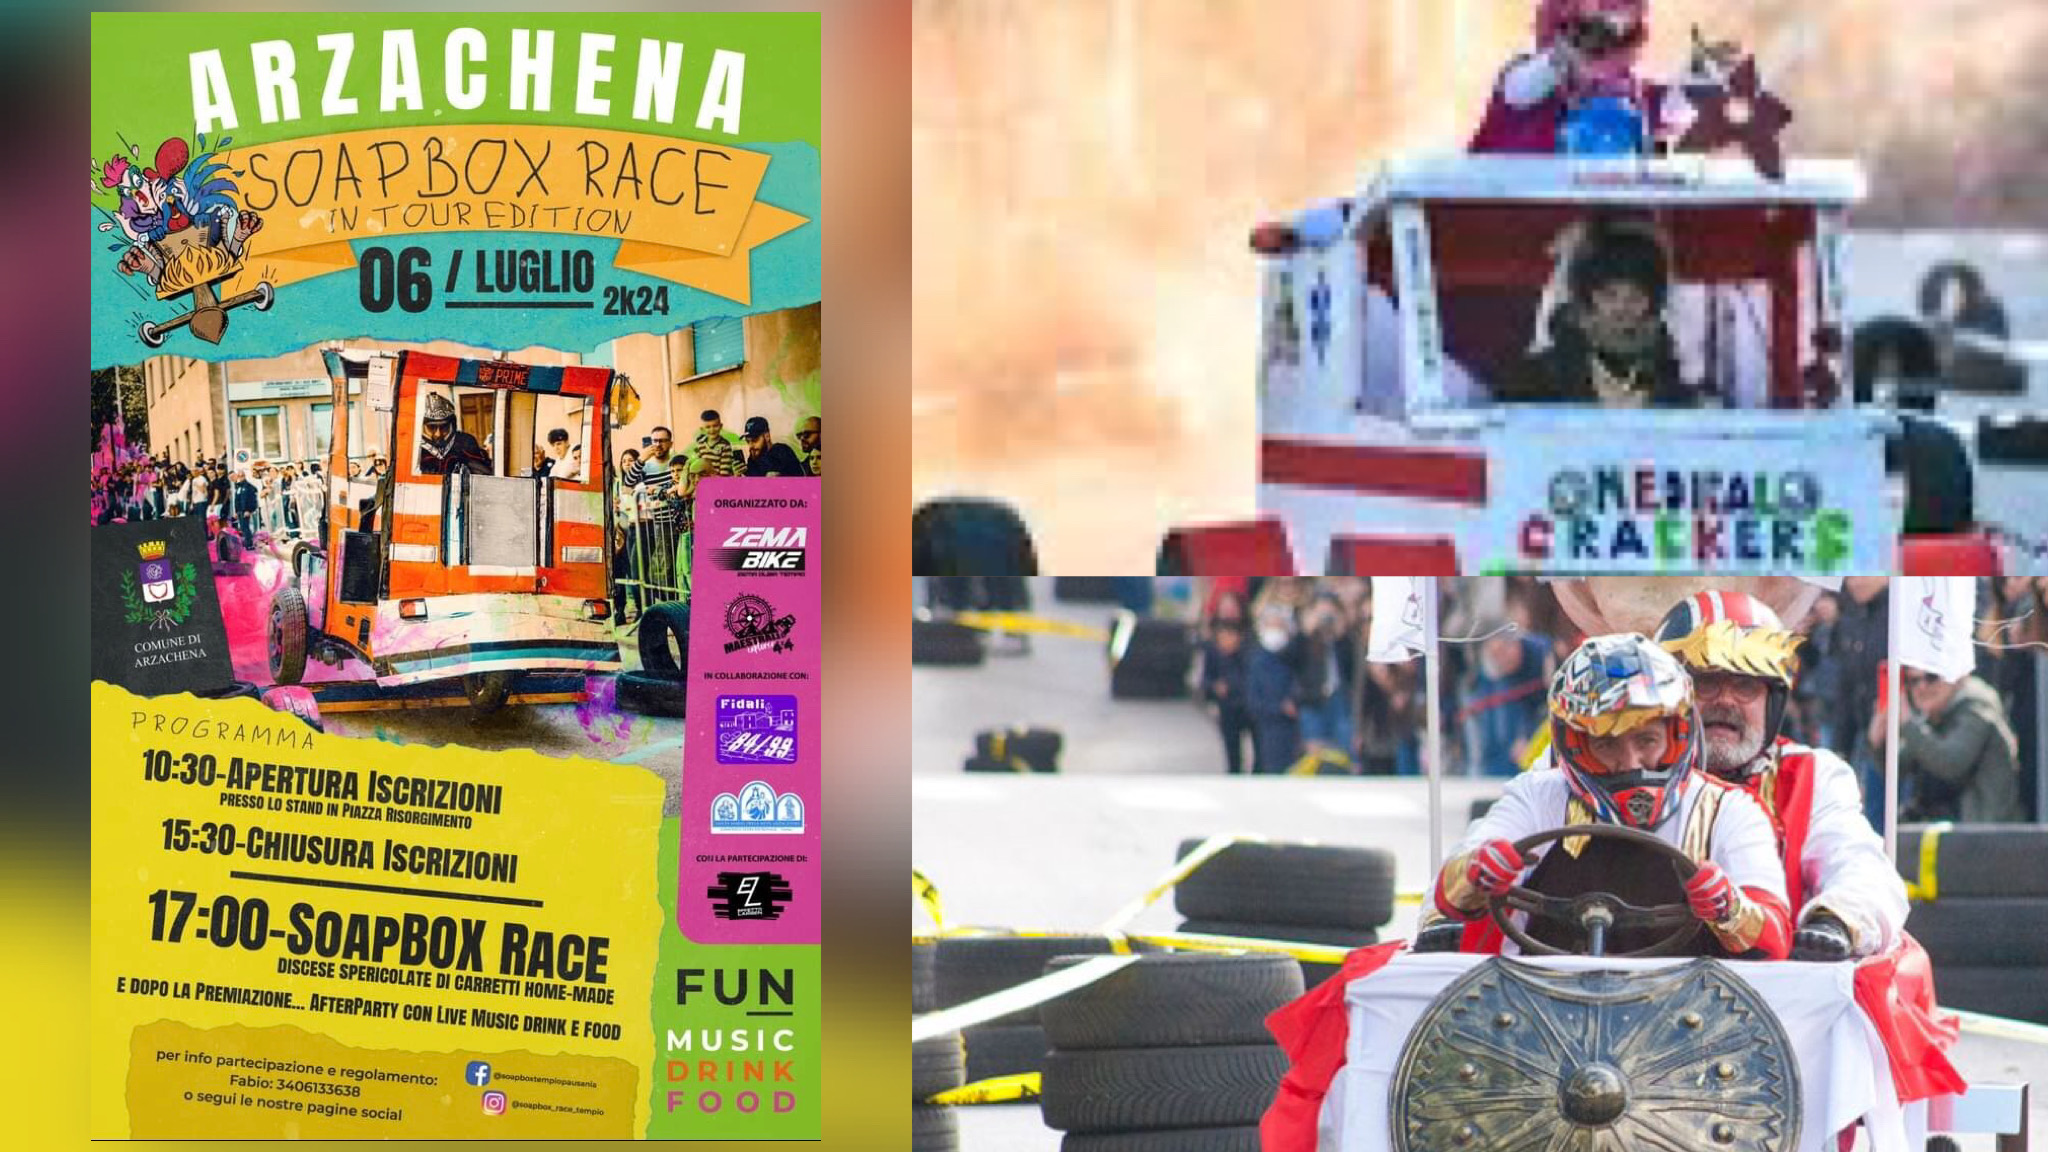 Arzachena ospita la Soapbox Race: la corsa più divertente per grandi e piccini